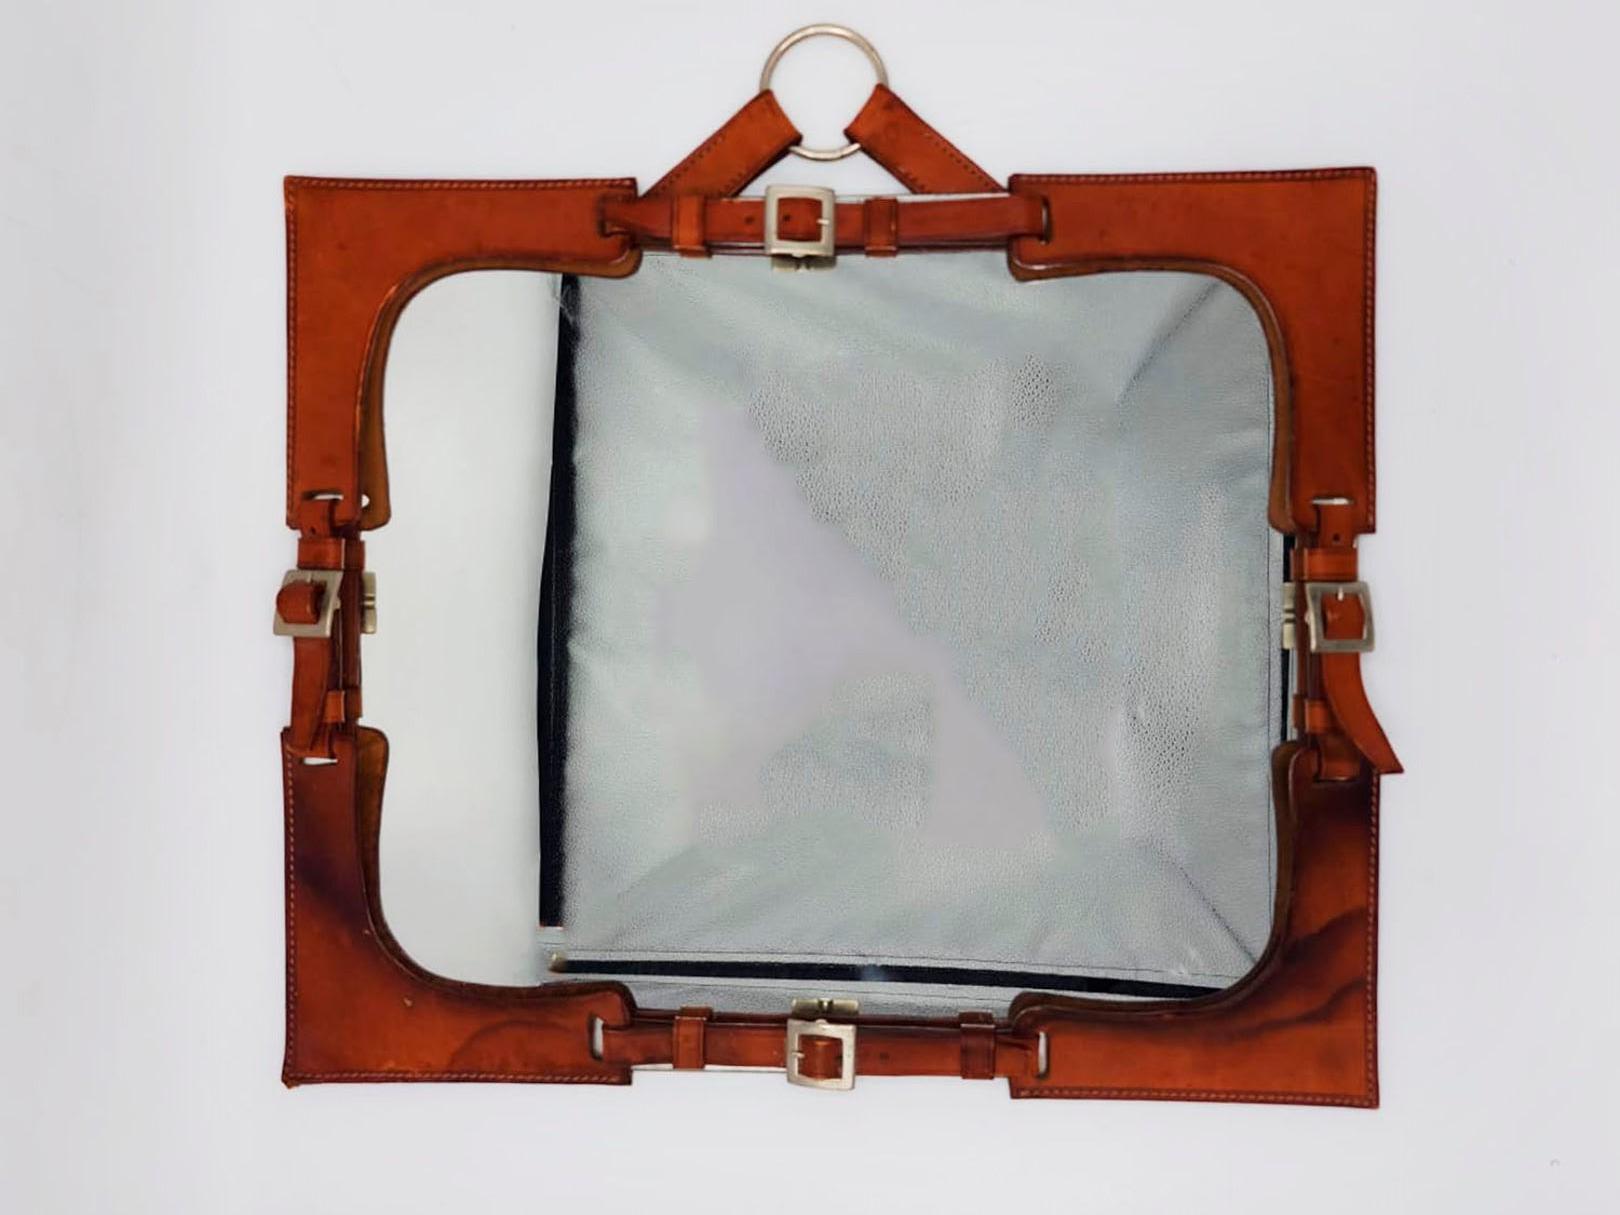 Miroir en cuir Brown dans le style de Hermes Paris, 20ème siècle

Miroir Hermès Paris de 1970, en cuir rustique, cette pièce est munie à chaque extrémité d'une boucle de ceinture.
Mesures :
Hauteur : 46 centimètres
Longueur : 49,5 centimètres